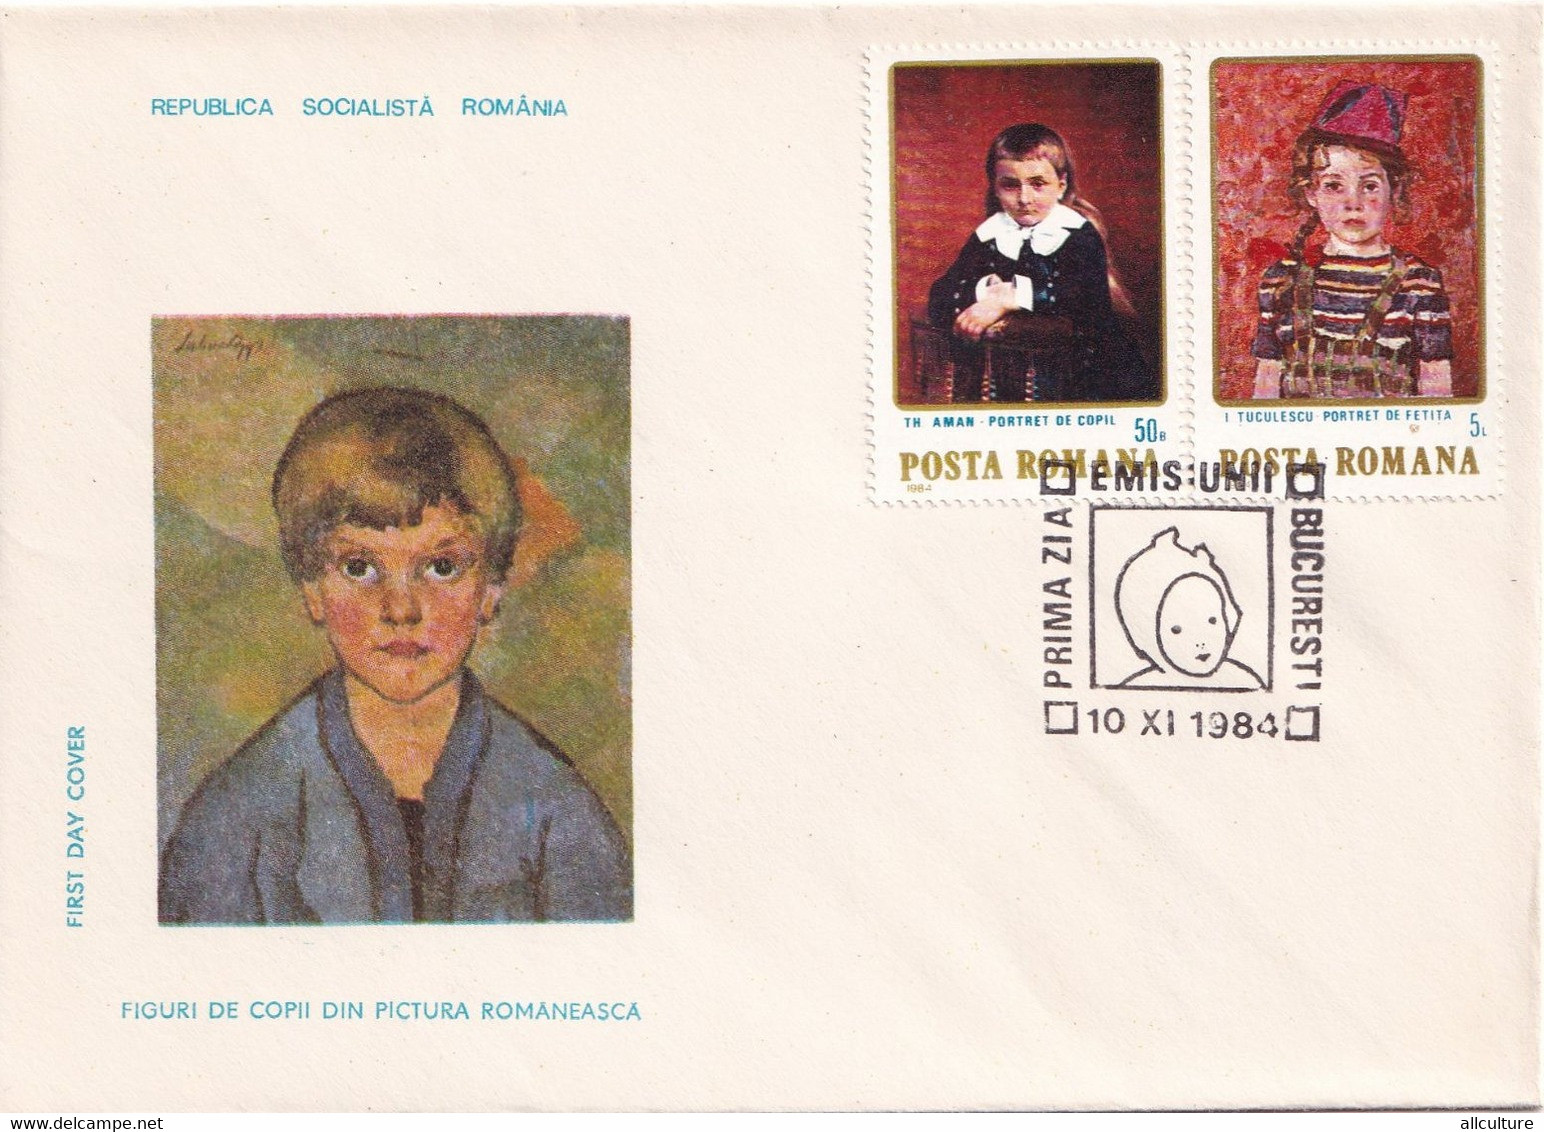 A2652 - Figuri De Copii Din Pictura Romaneasca, Republica Socialista Romania, Bucuresti 1984 3 Covers  FDC - FDC